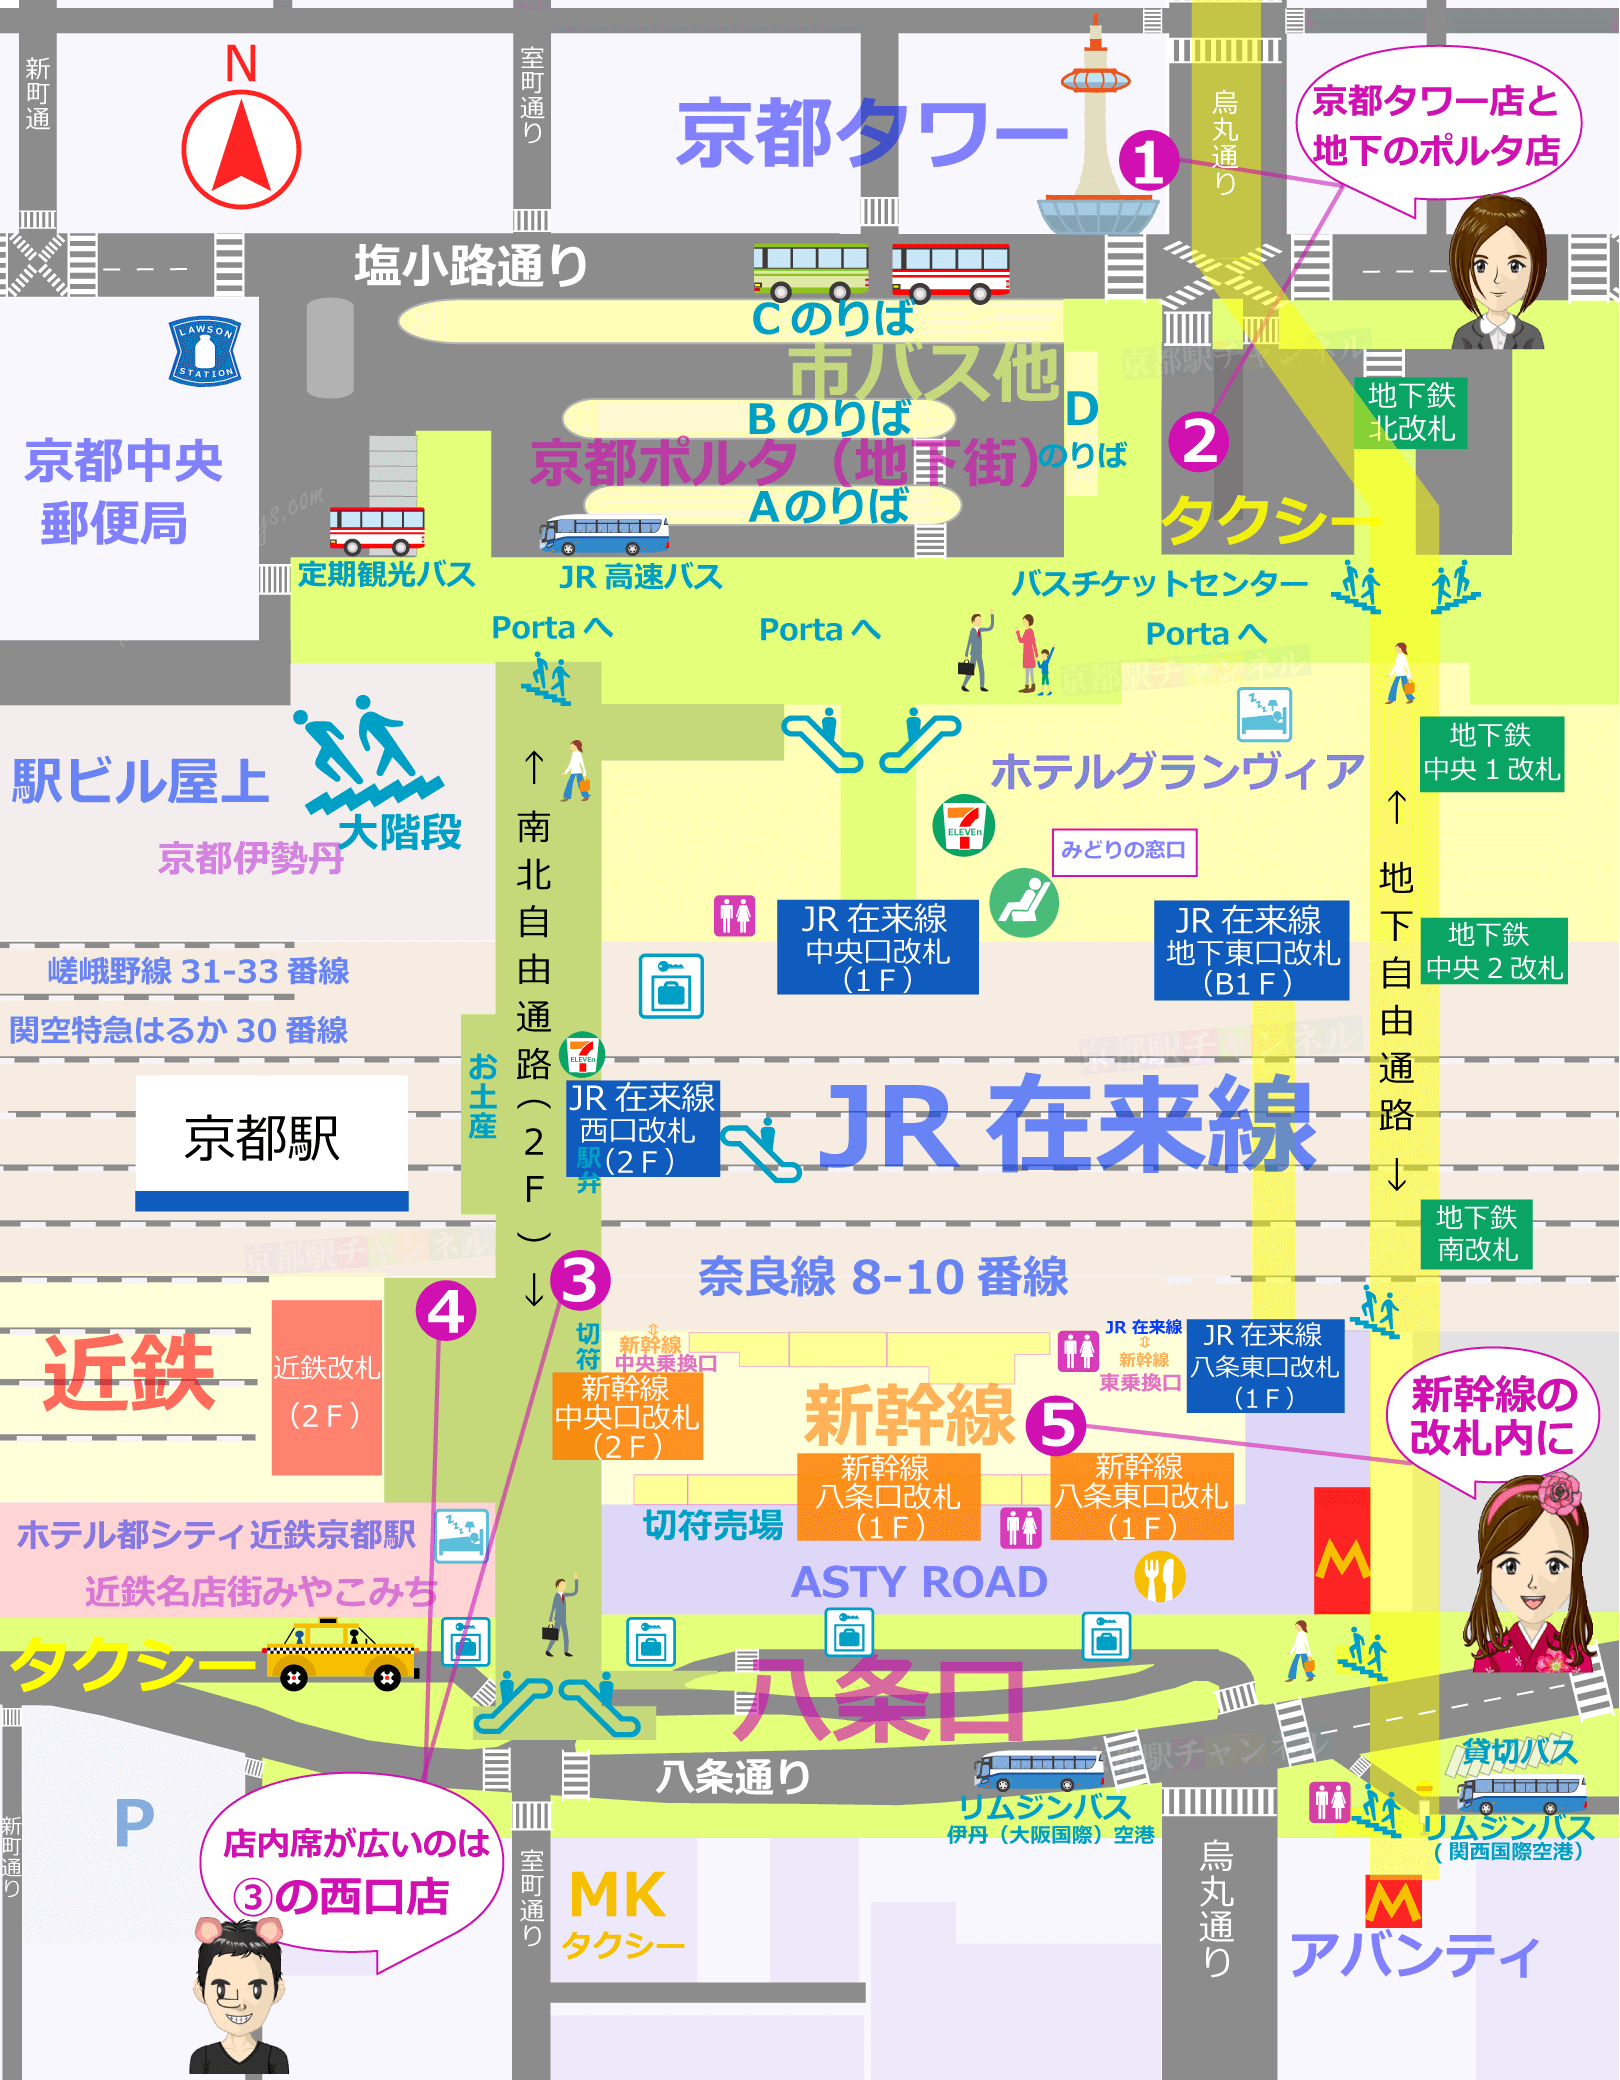 京都駅の地図とスタバ